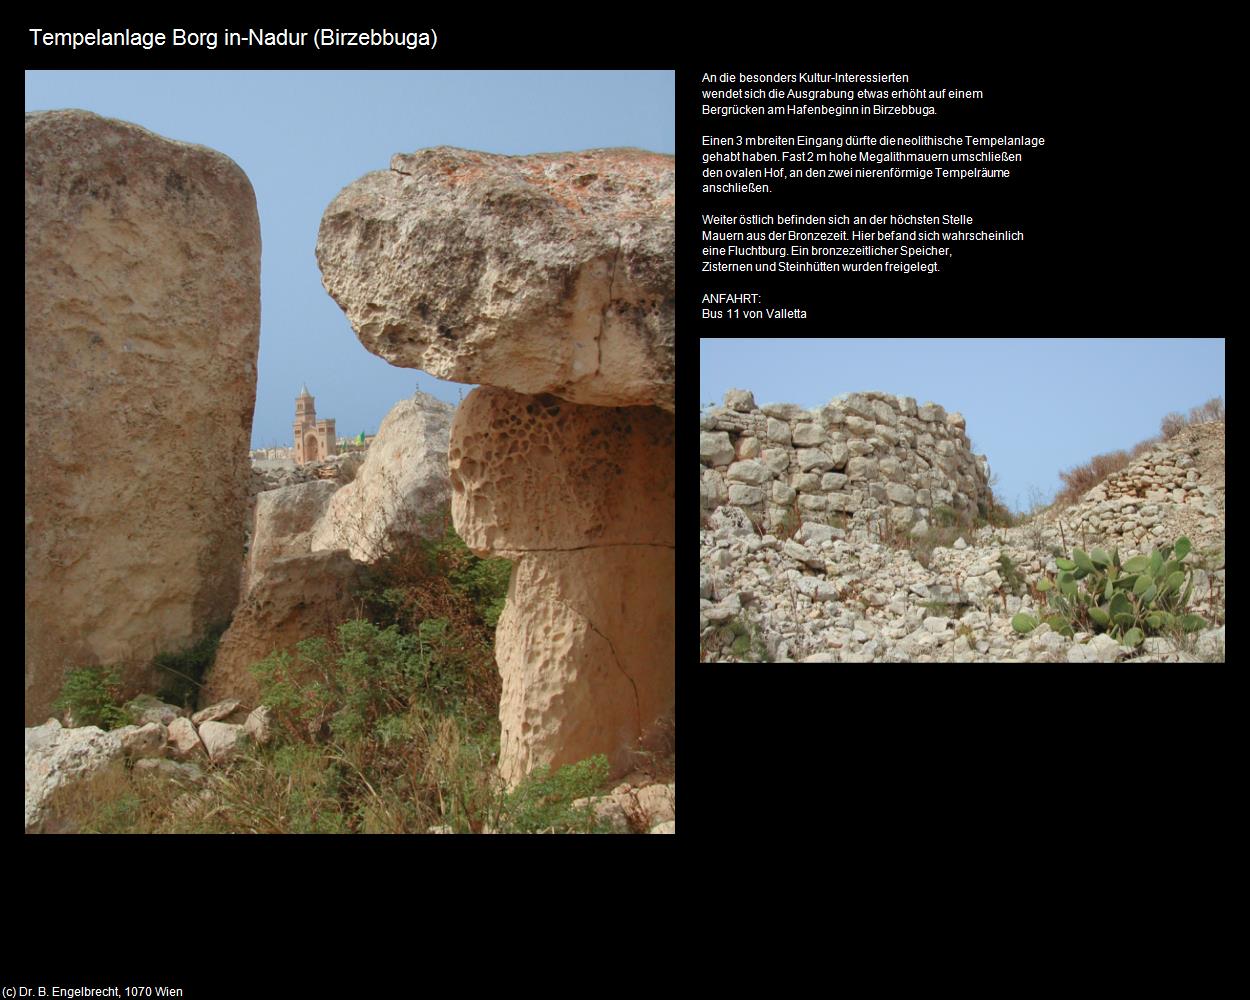 Tempelanlage Borg in-Nadur  (Birzebbuga auf Malta) in Malta - Perle im Mittelmeer